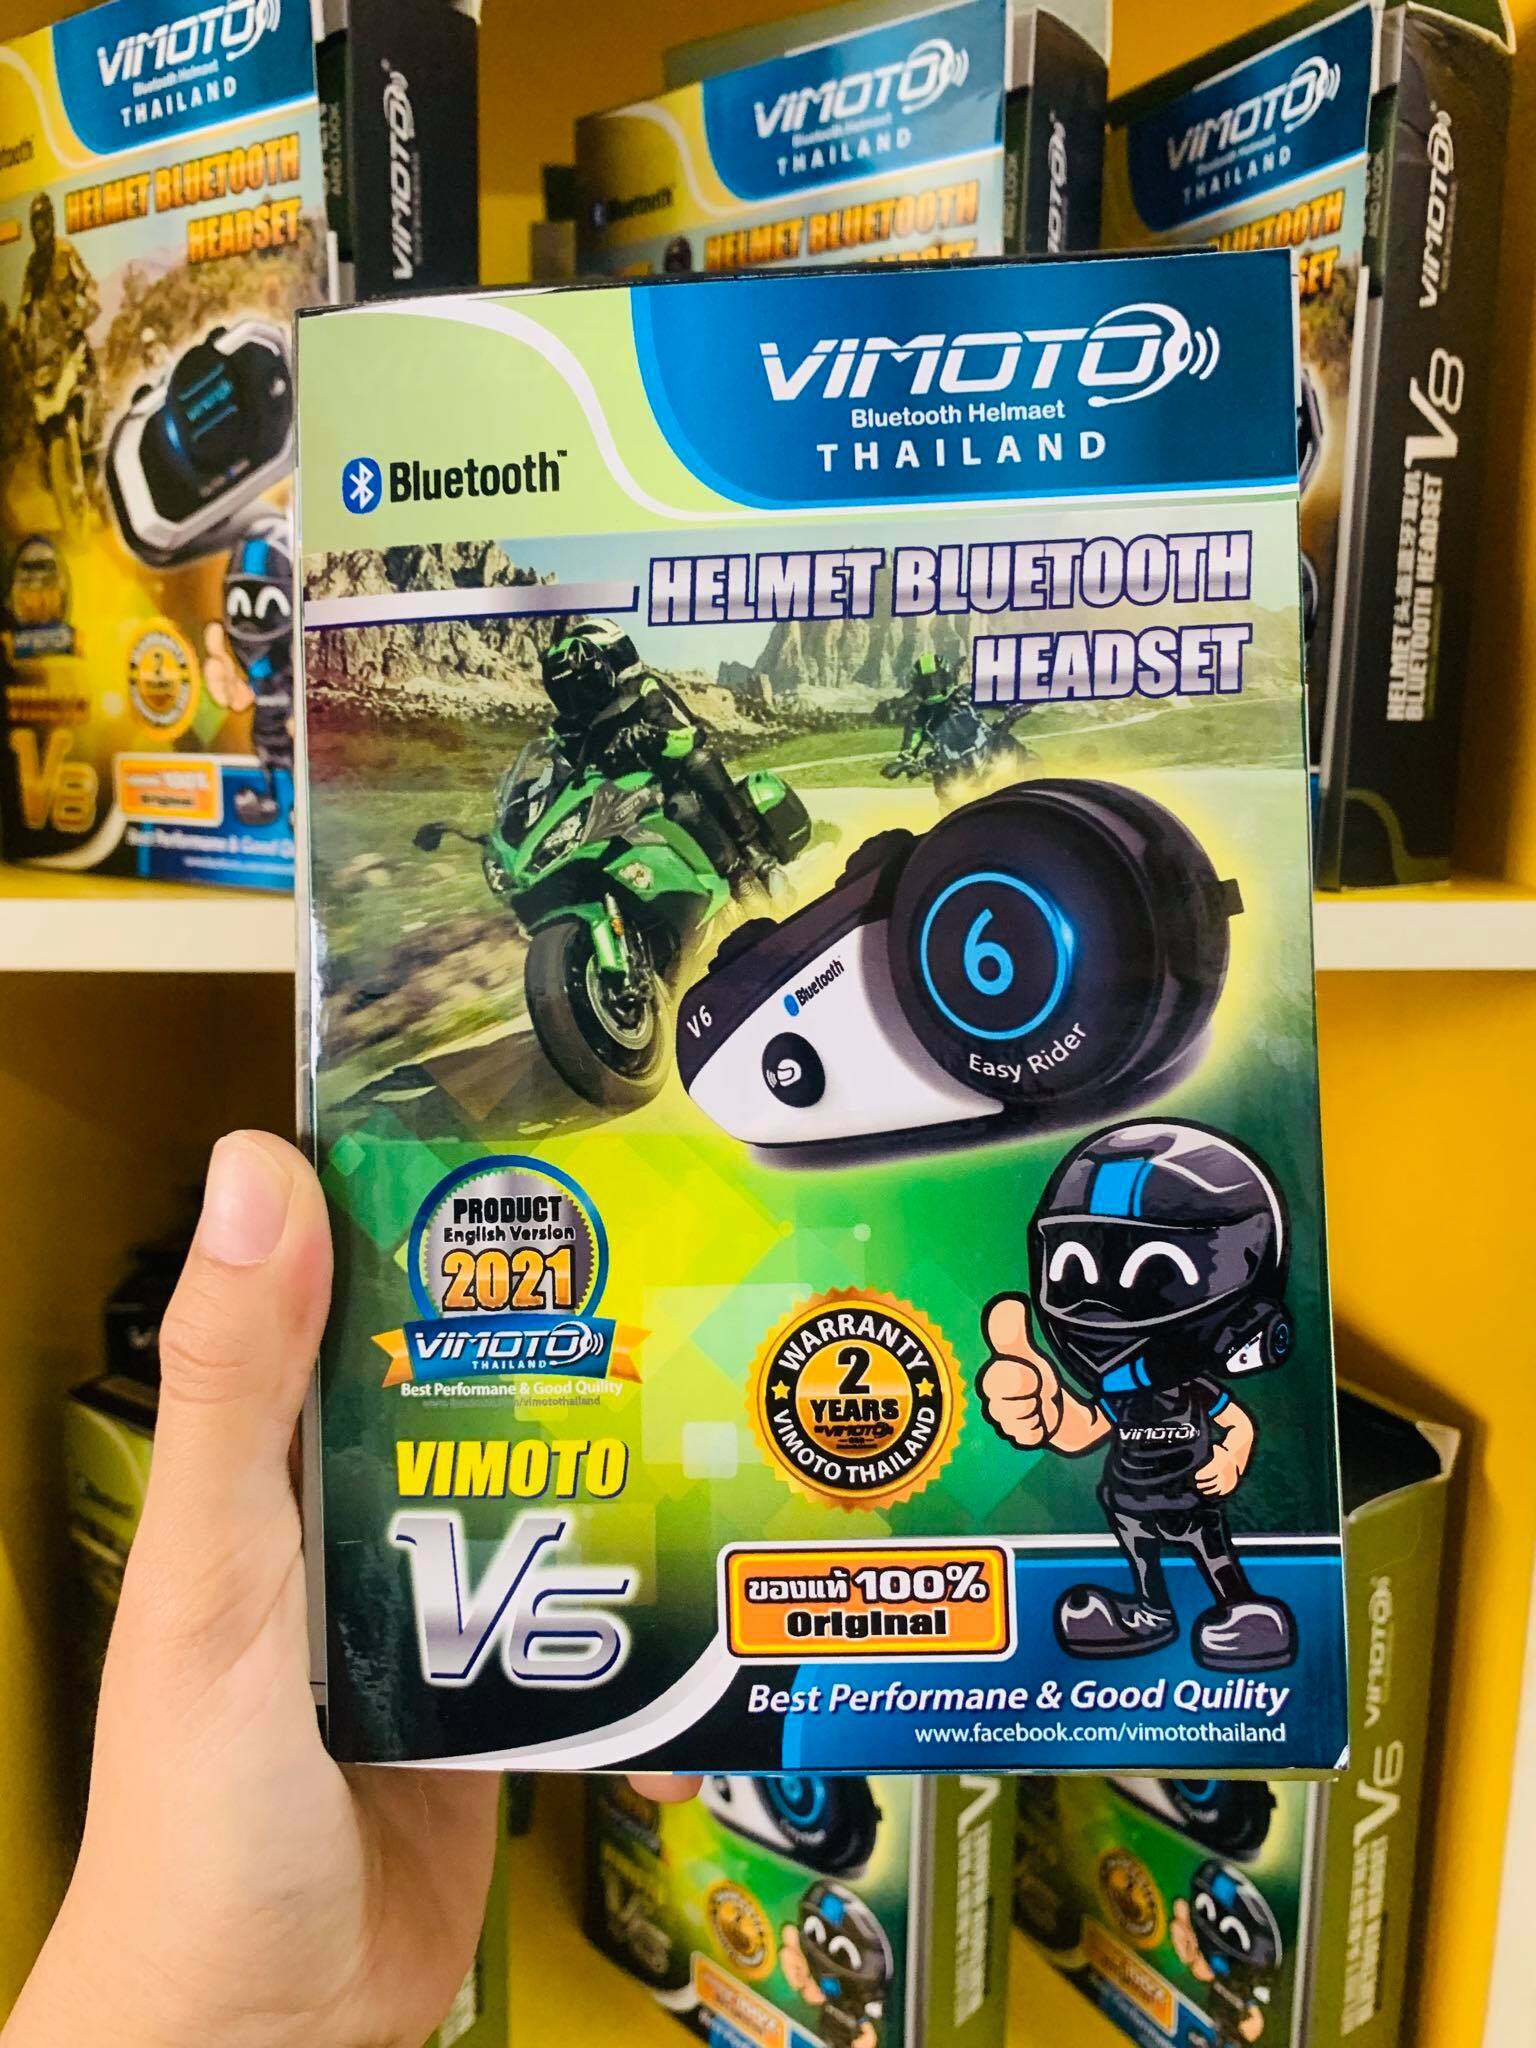 บลูทูธติดหมวกกันน๊อค ประกัน 2 ปี Vimoto Brand V6 Multi-function By Vimoto Thailand